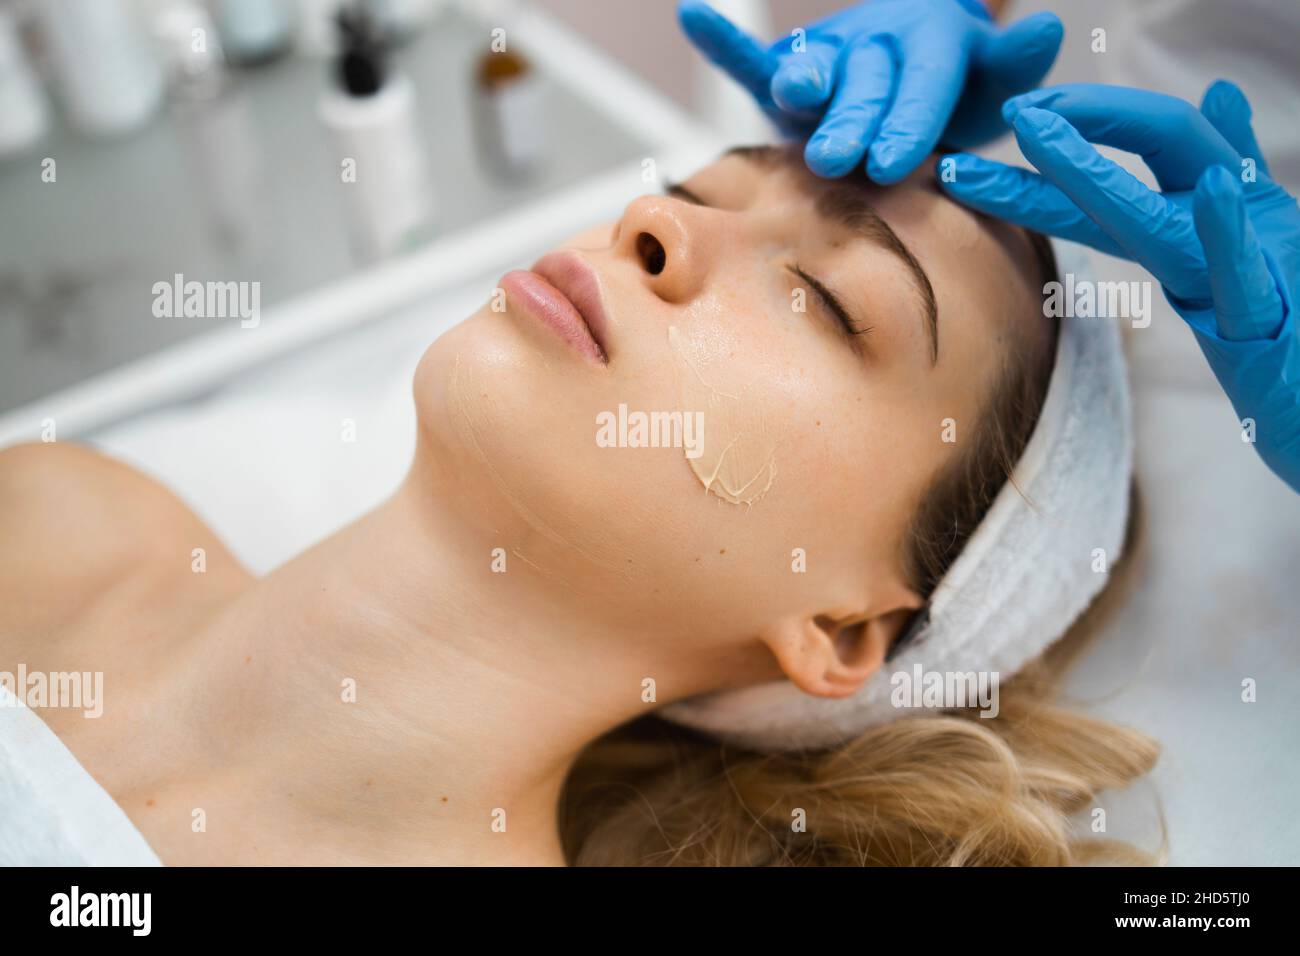 Las manos del cosmetólogo aplican crema a la cara de la mujer. Mujer masajeando la piel facial del cliente Foto de stock